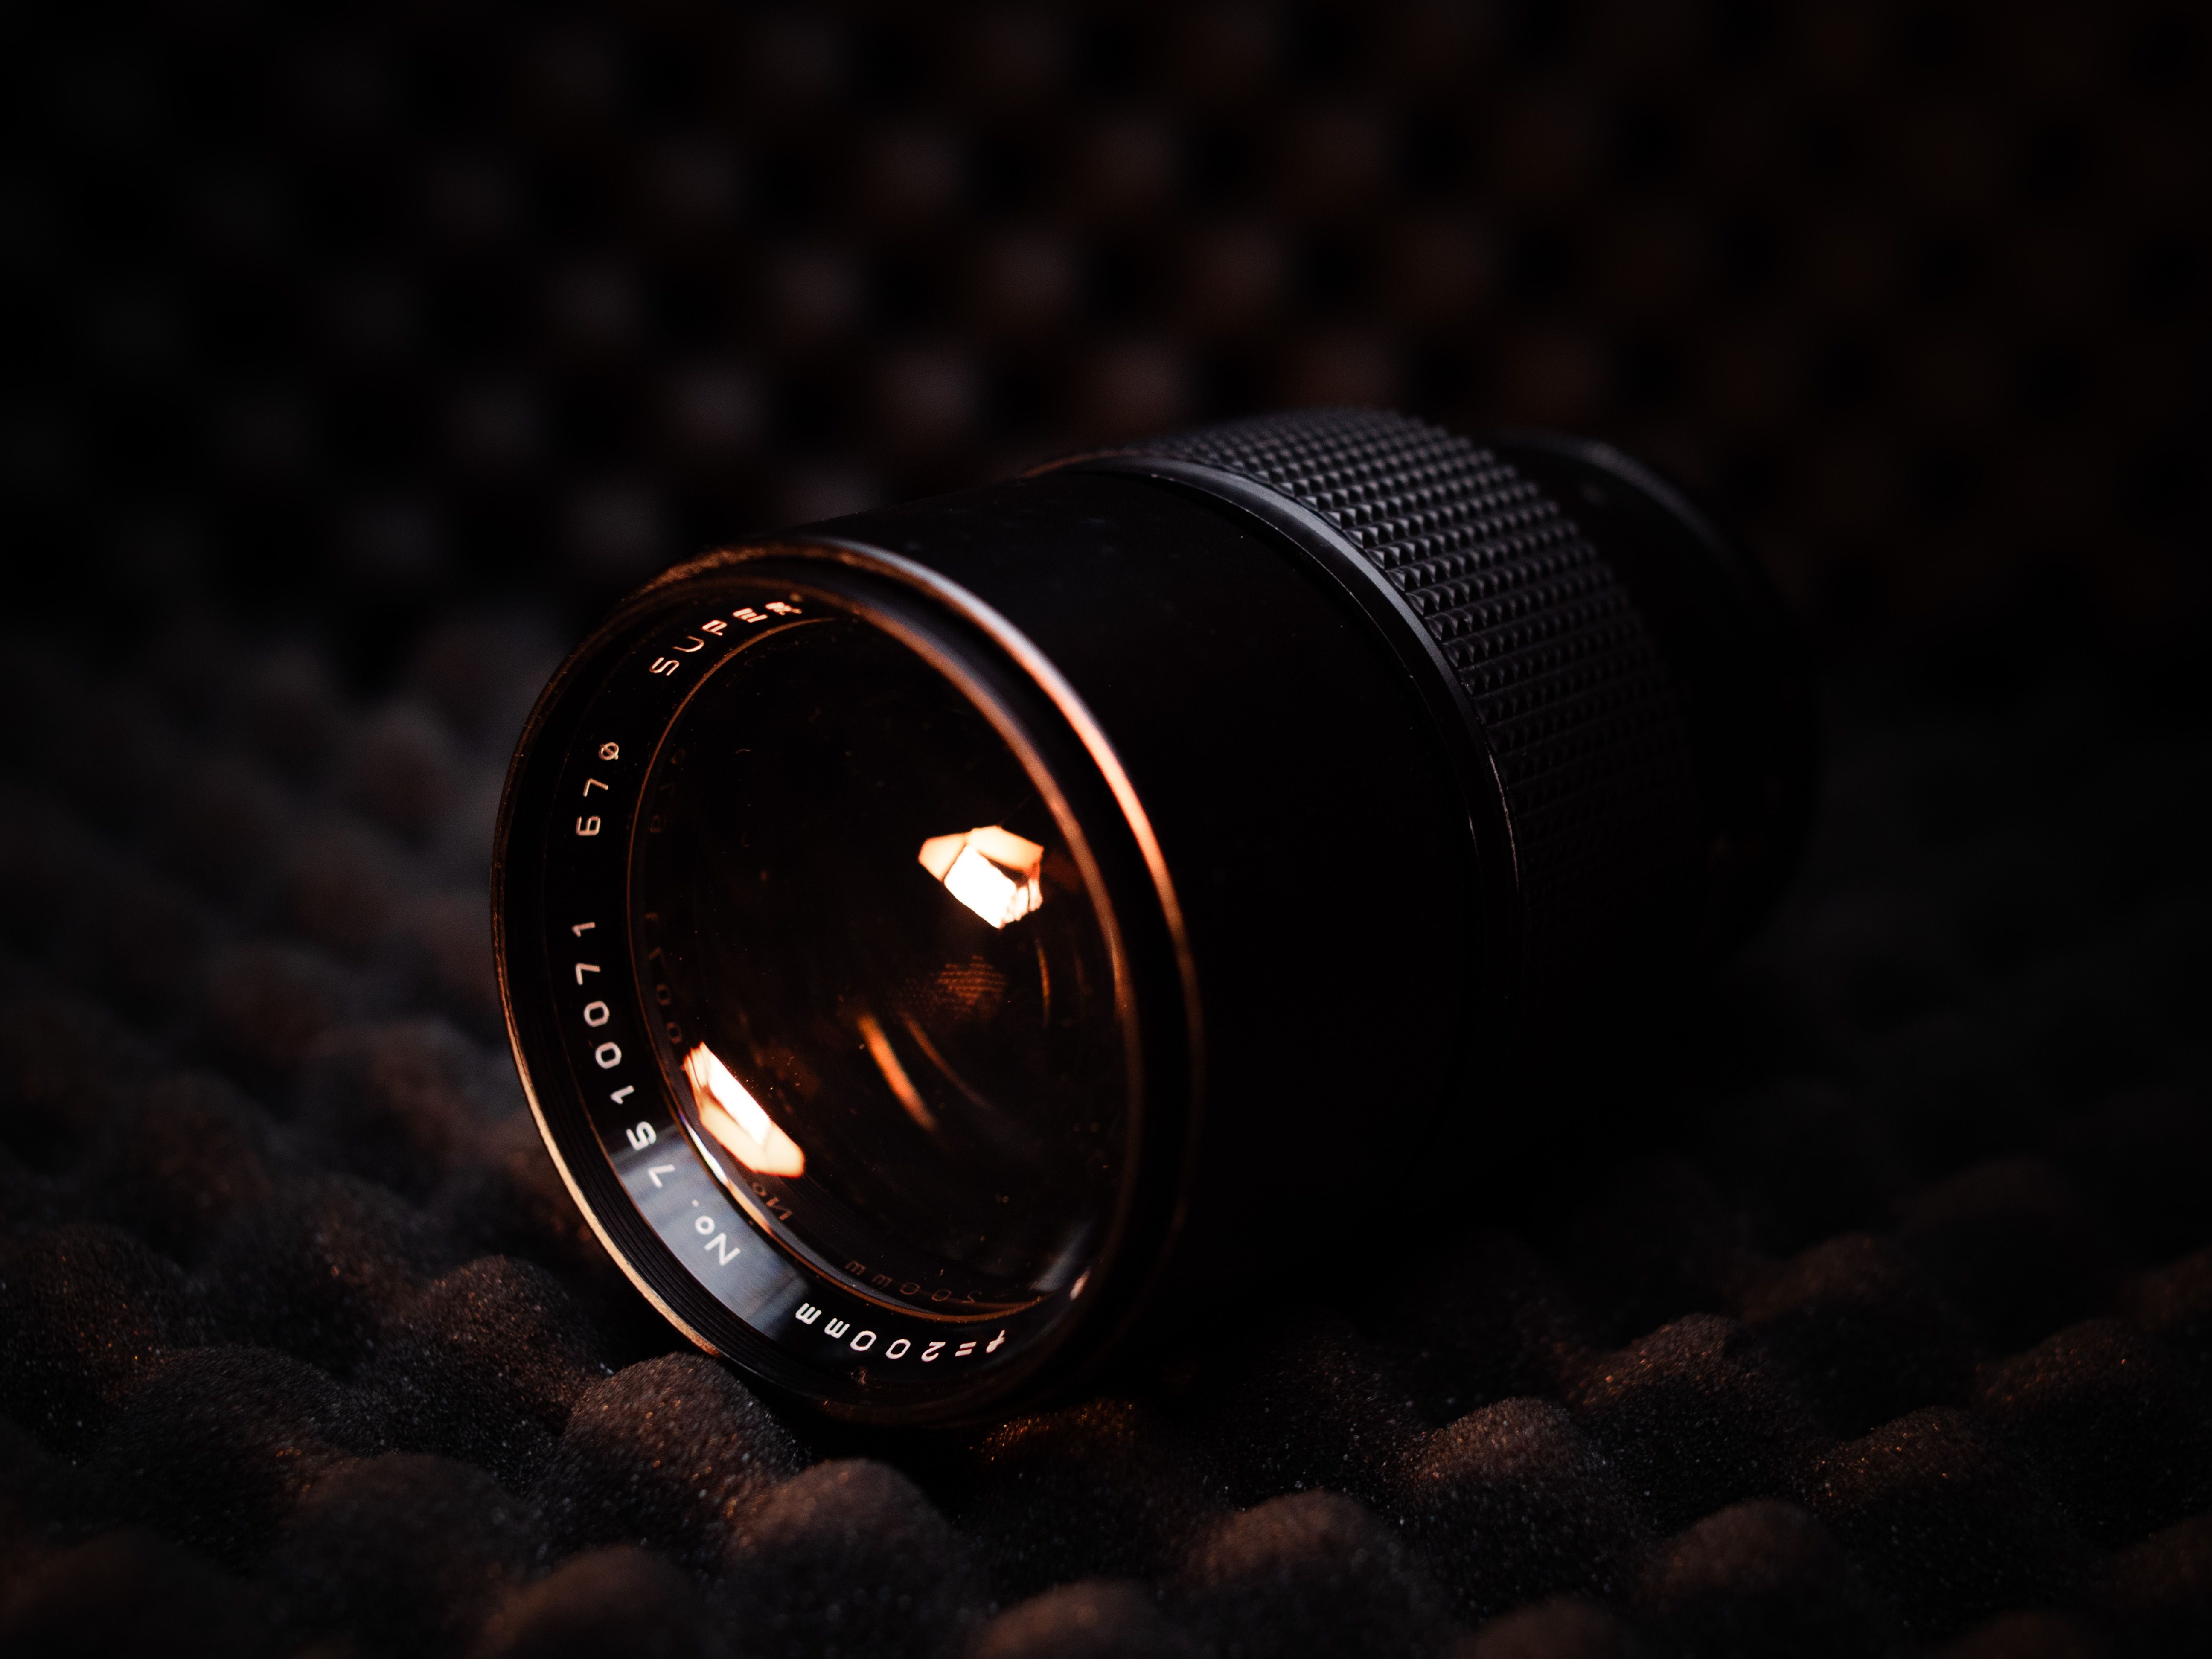 200mm f.3 Lens